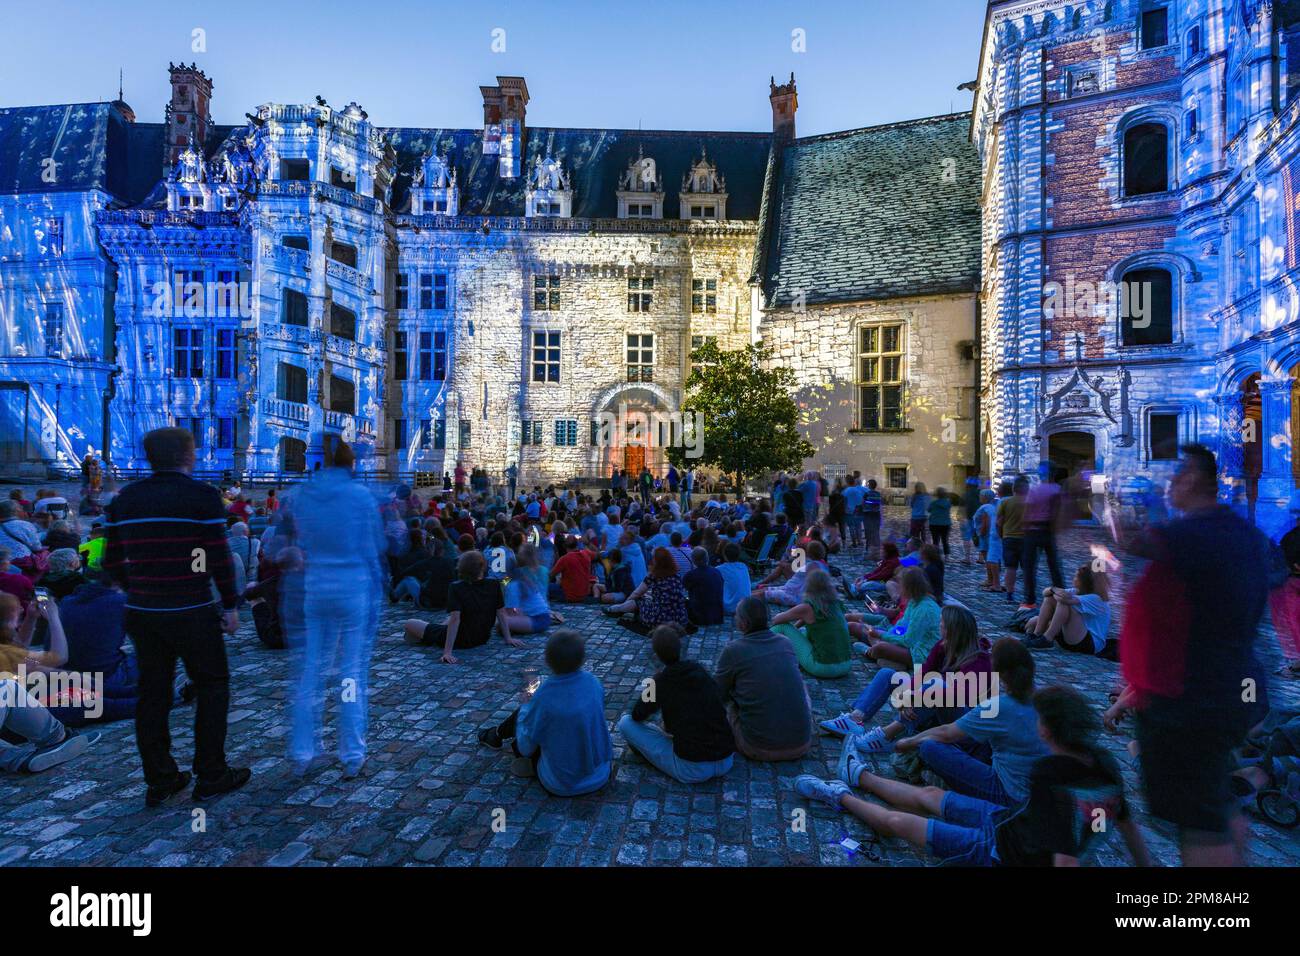 Frankreich, Loir-et-Cher, Blois, Loire-Tal, das von der UNESCO zum Weltkulturerbe erklärt wurde, Château Royal de Blois, die Ton- und Lichtshow nutzt die neuesten Technologien: 3D-Modellierung der Morphologie der Fassaden, räumliche Stimmen, Videokartierung, Verwendung von kinematografischen Prozessen, Einbettung echter Filmszenen Stockfoto